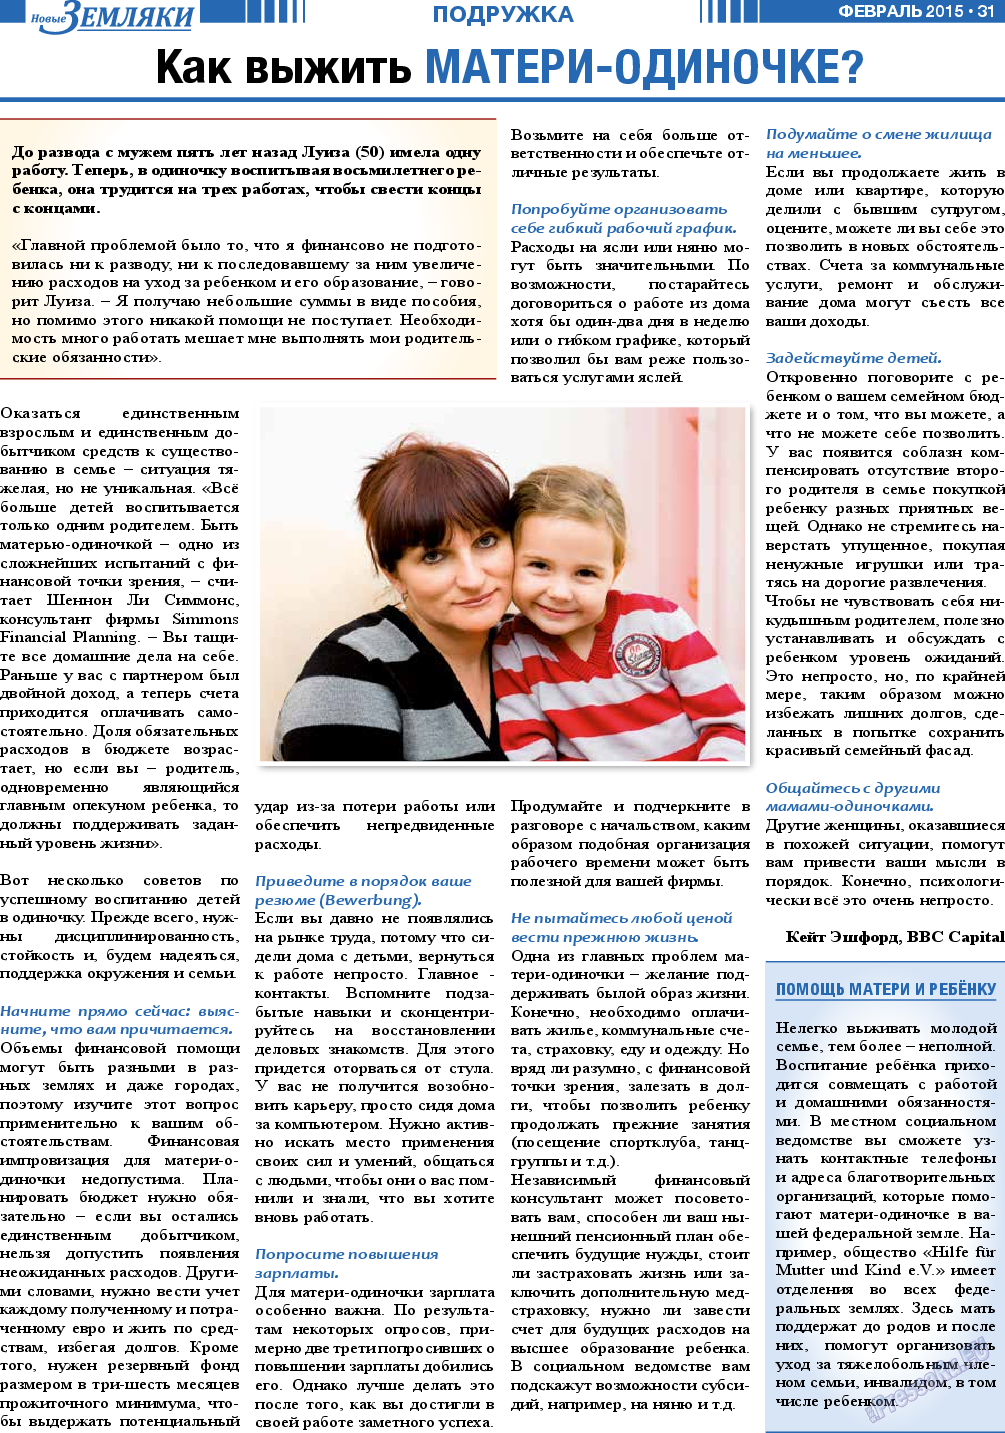 Новые Земляки, газета. 2015 №2 стр.31